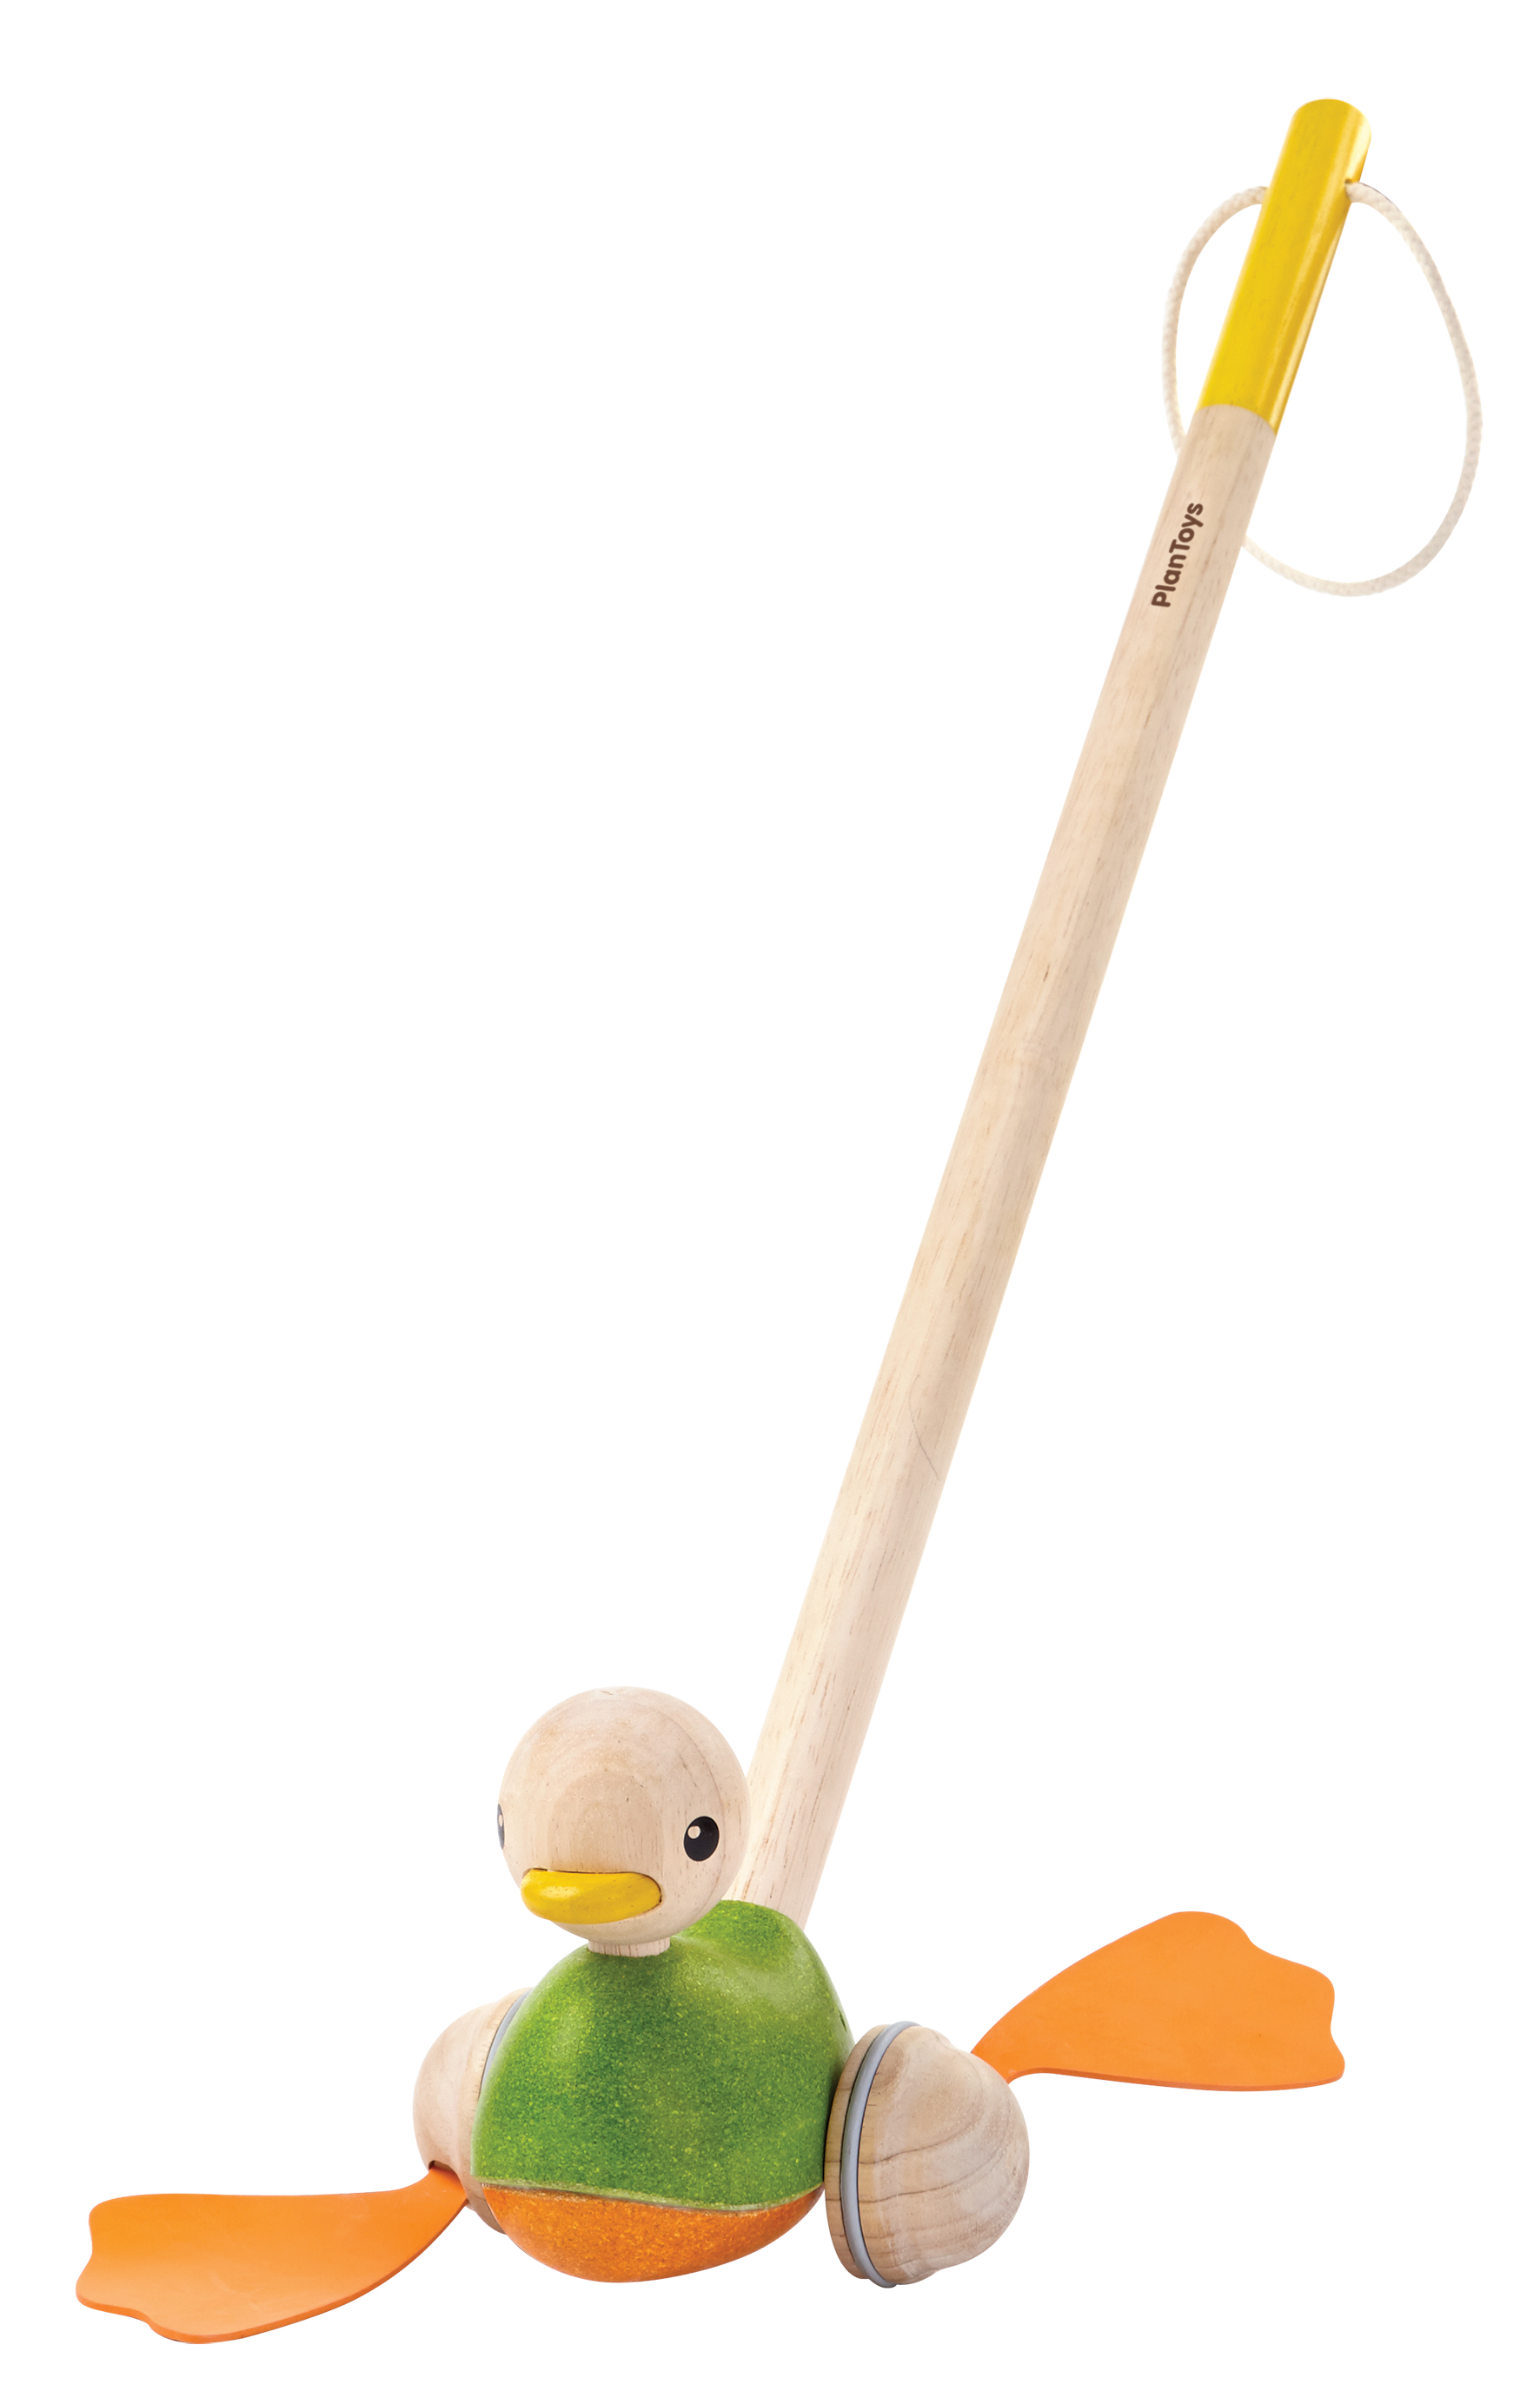 PlanToys Push-Along Duck ของเล่นไม้เป็ดน้อยเตาะแตะ ของเล่นประเภทลากจูงช่วยฝึกเดิน เหมาะสำหรับเด็กอายุ 12 เดือนขึ้นไป